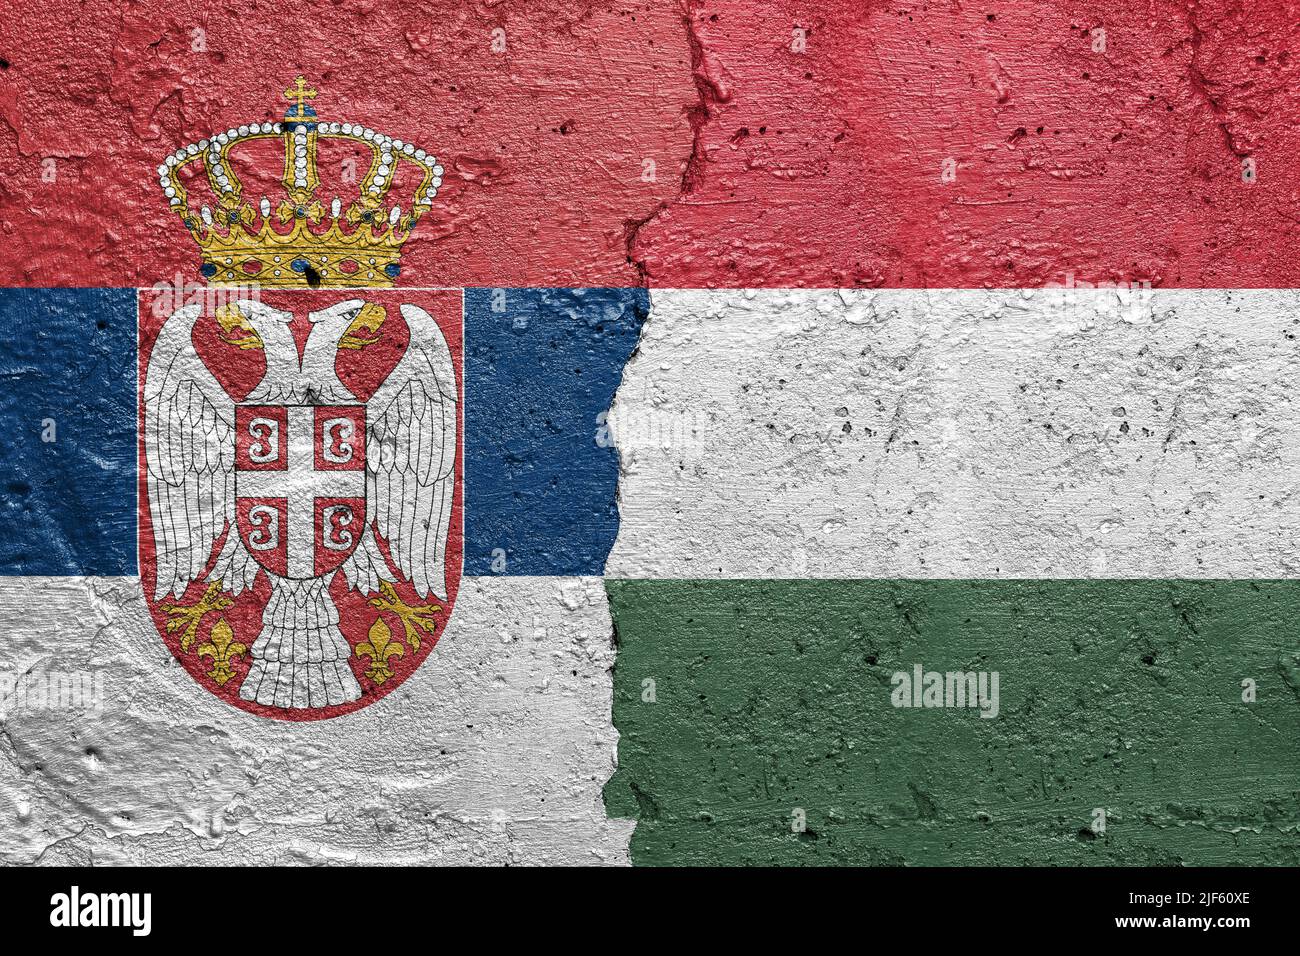 Drapeaux de Serbie et de Hongrie - mur en béton fissuré peint avec un drapeau serbe à gauche et un drapeau hongrois à droite Banque D'Images